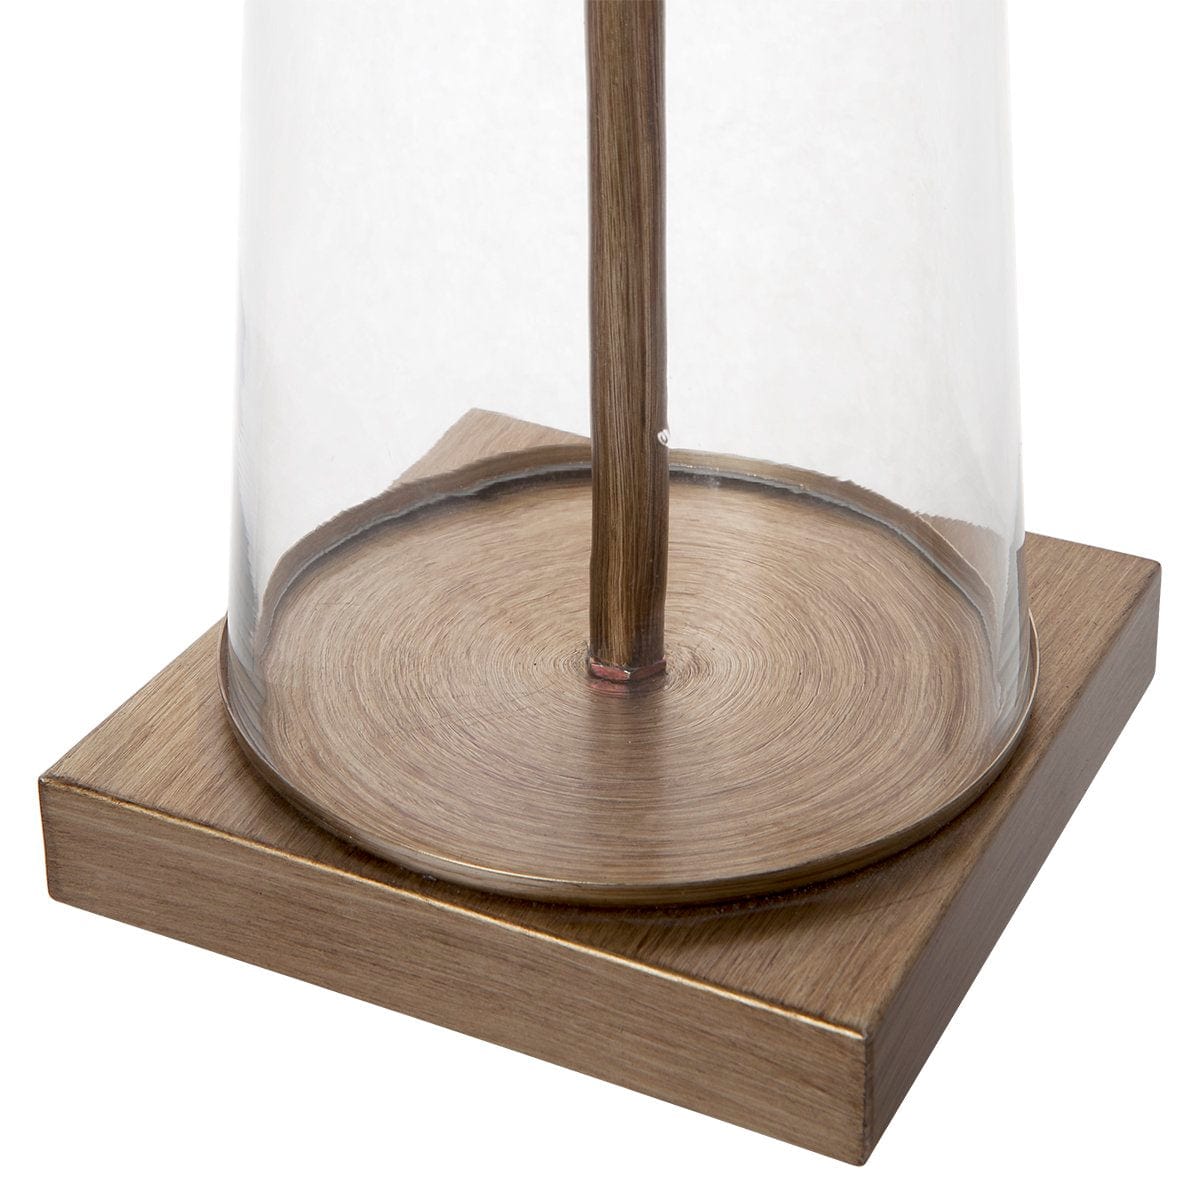 CAFE LIGHTING & LIVING Table Lamp Aspen Table Lamp - Black Shade 13324